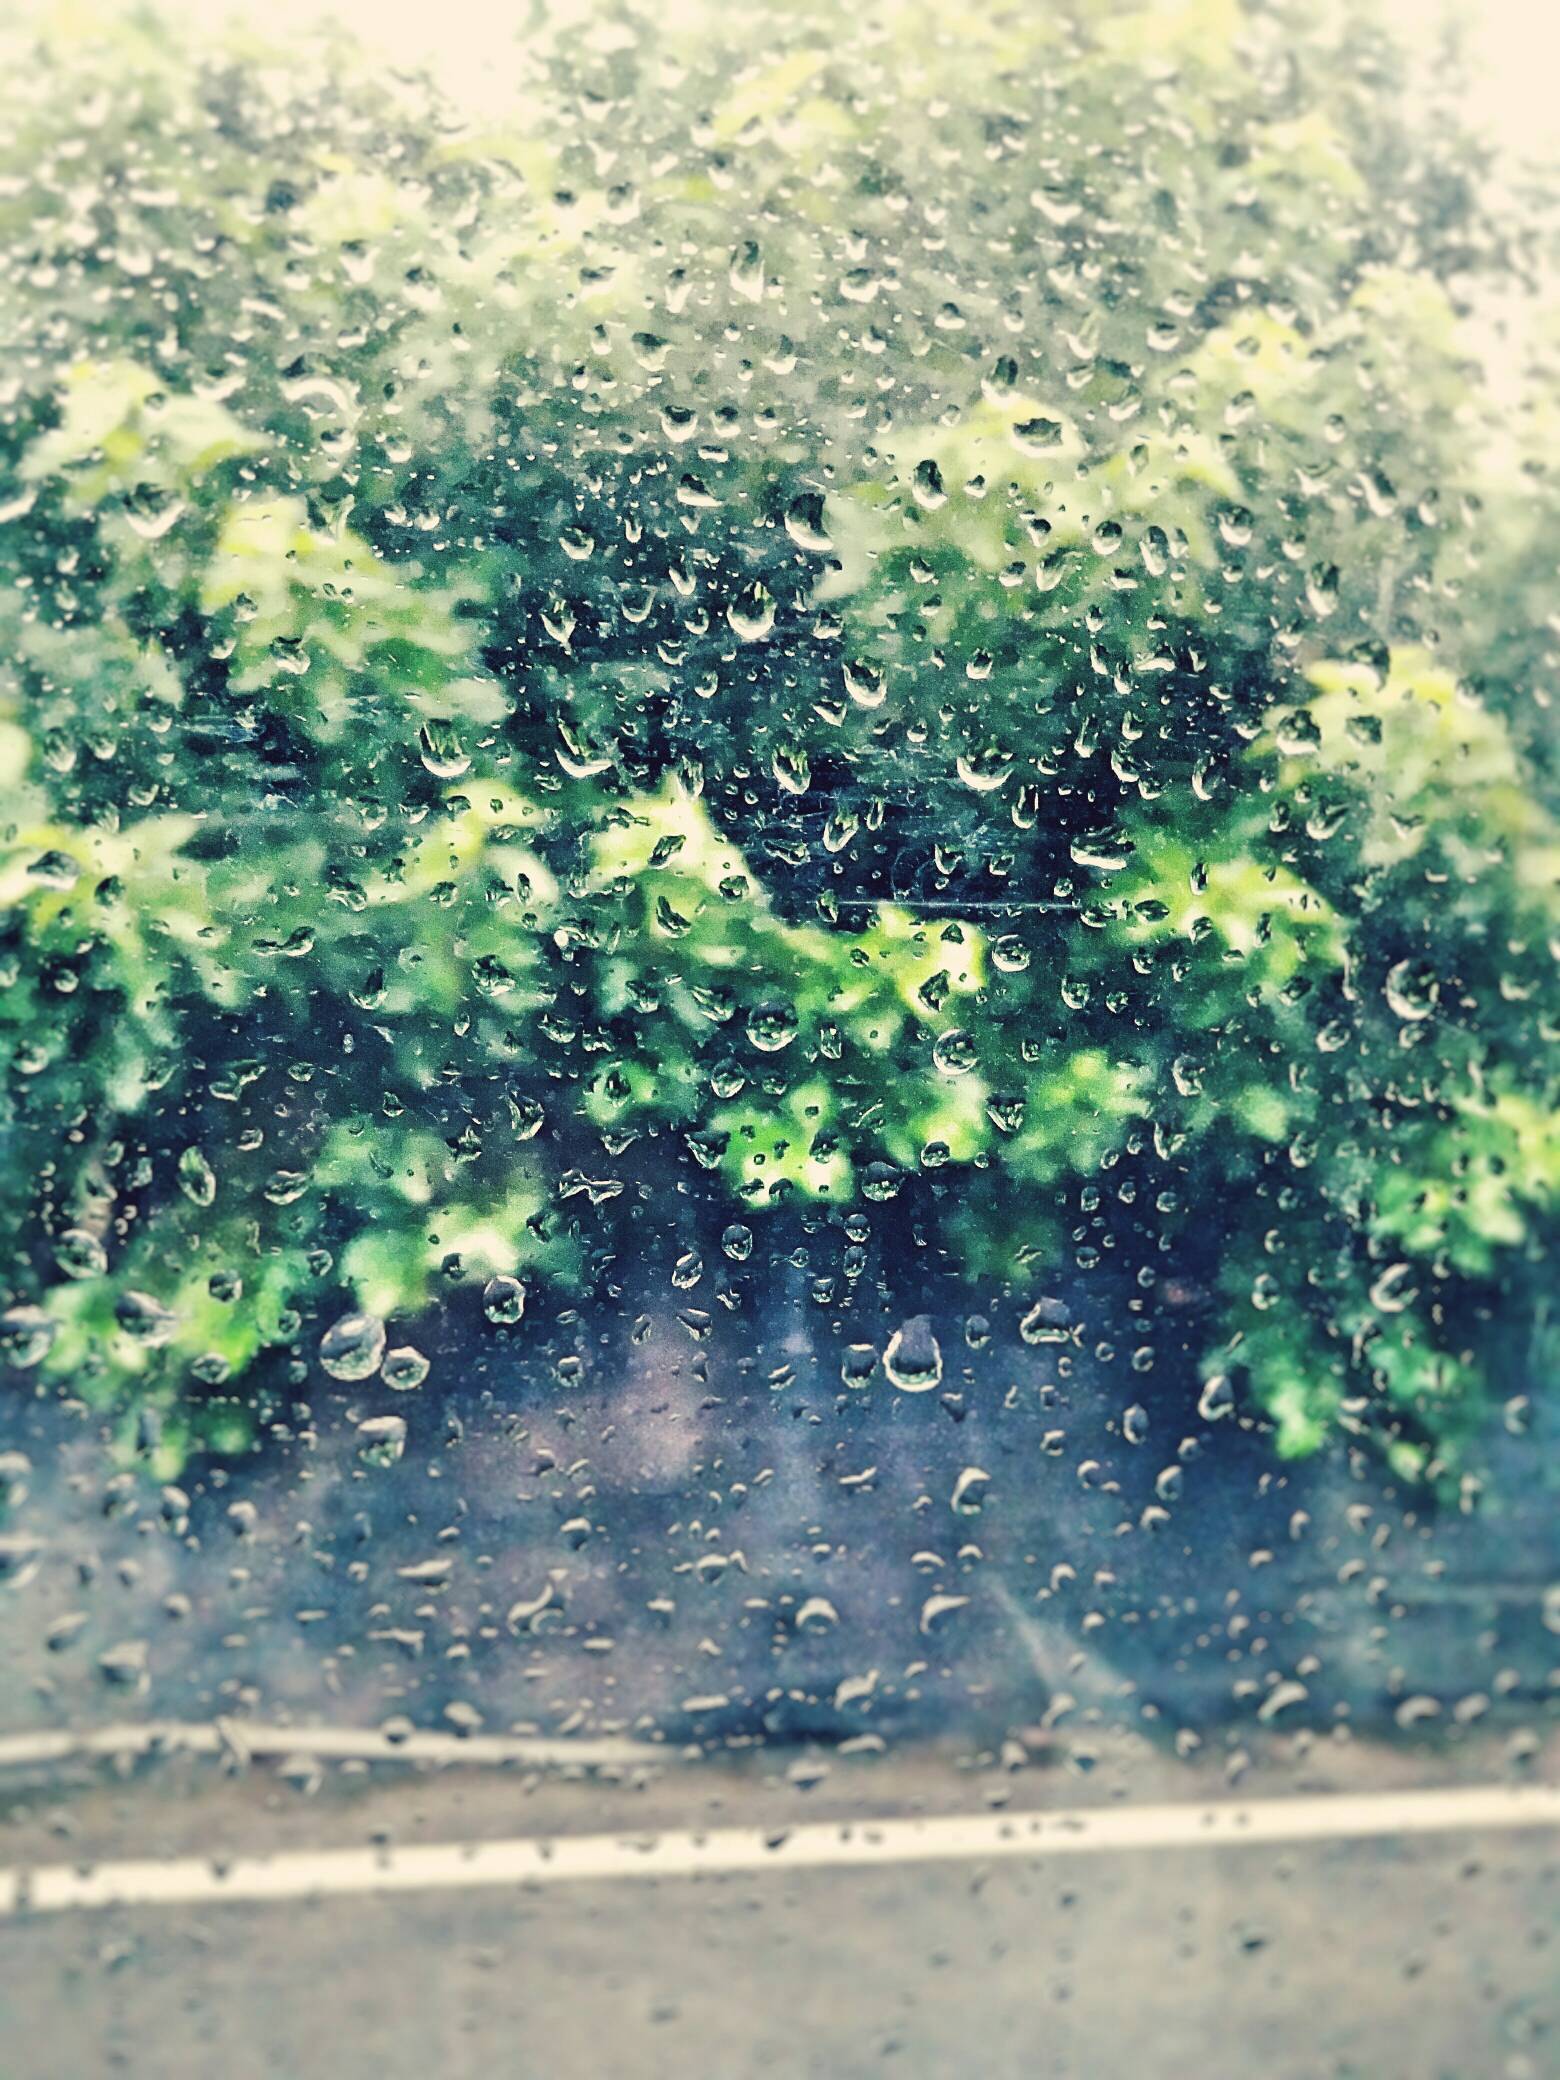 下雨天,窗外的雨滴